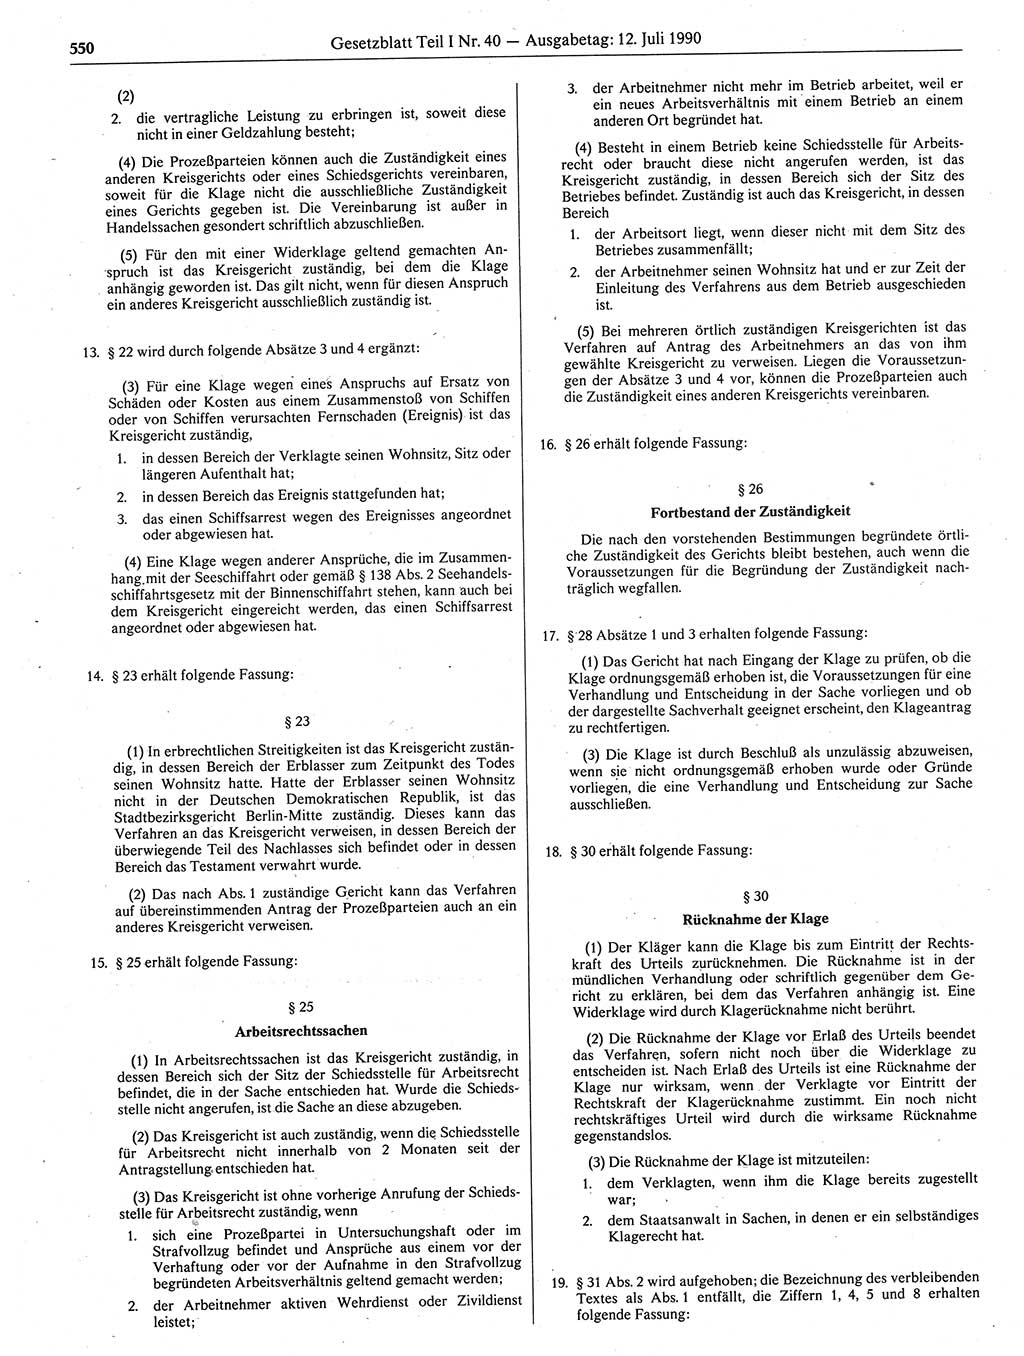 Gesetzblatt (GBl.) der Deutschen Demokratischen Republik (DDR) Teil Ⅰ 1990, Seite 550 (GBl. DDR Ⅰ 1990, S. 550)